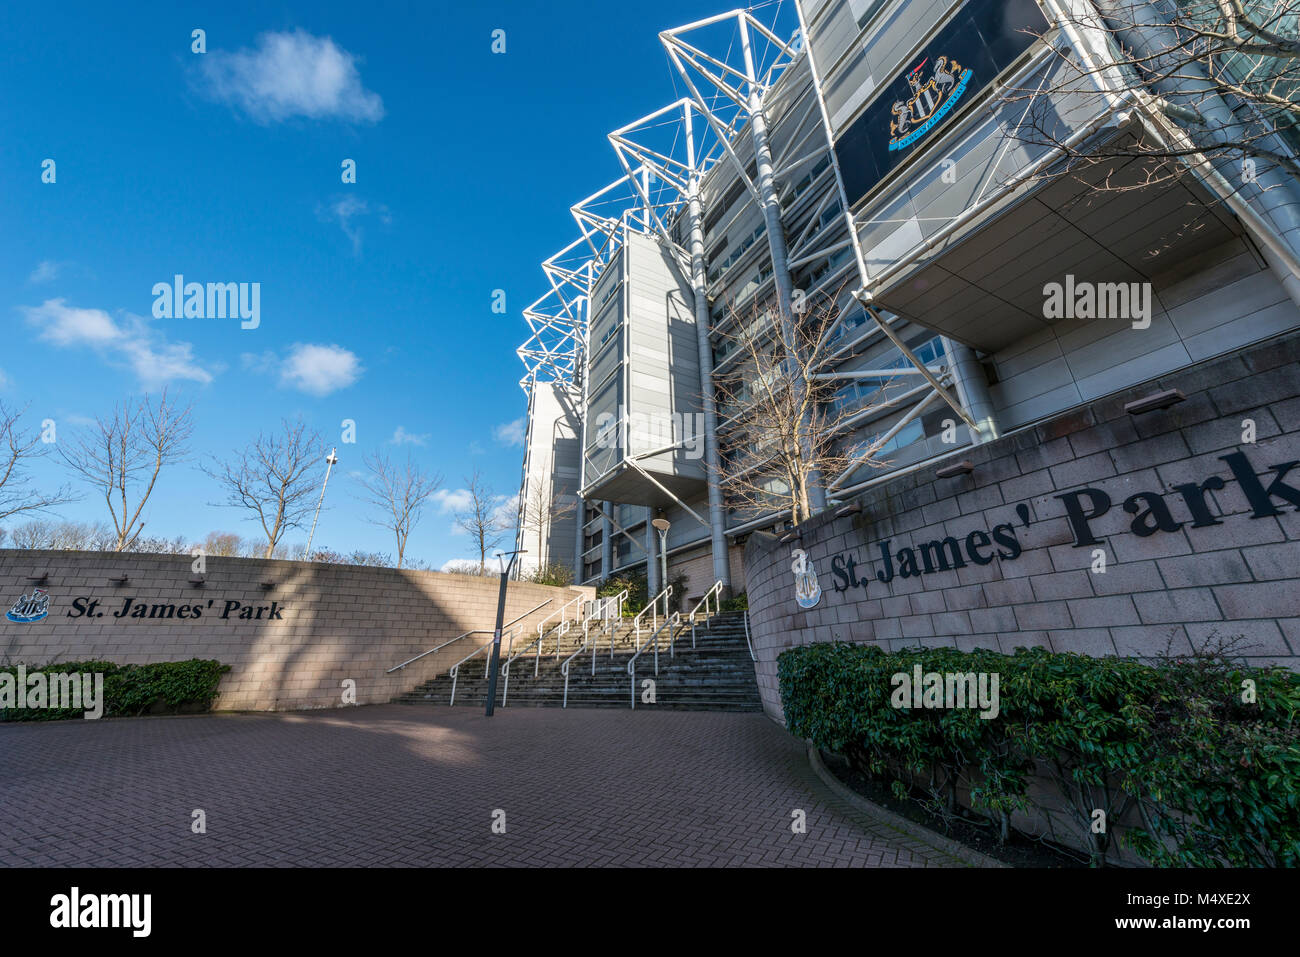 Newcastle United football ground, Newcastle upon Tyne, UK Stock Photo